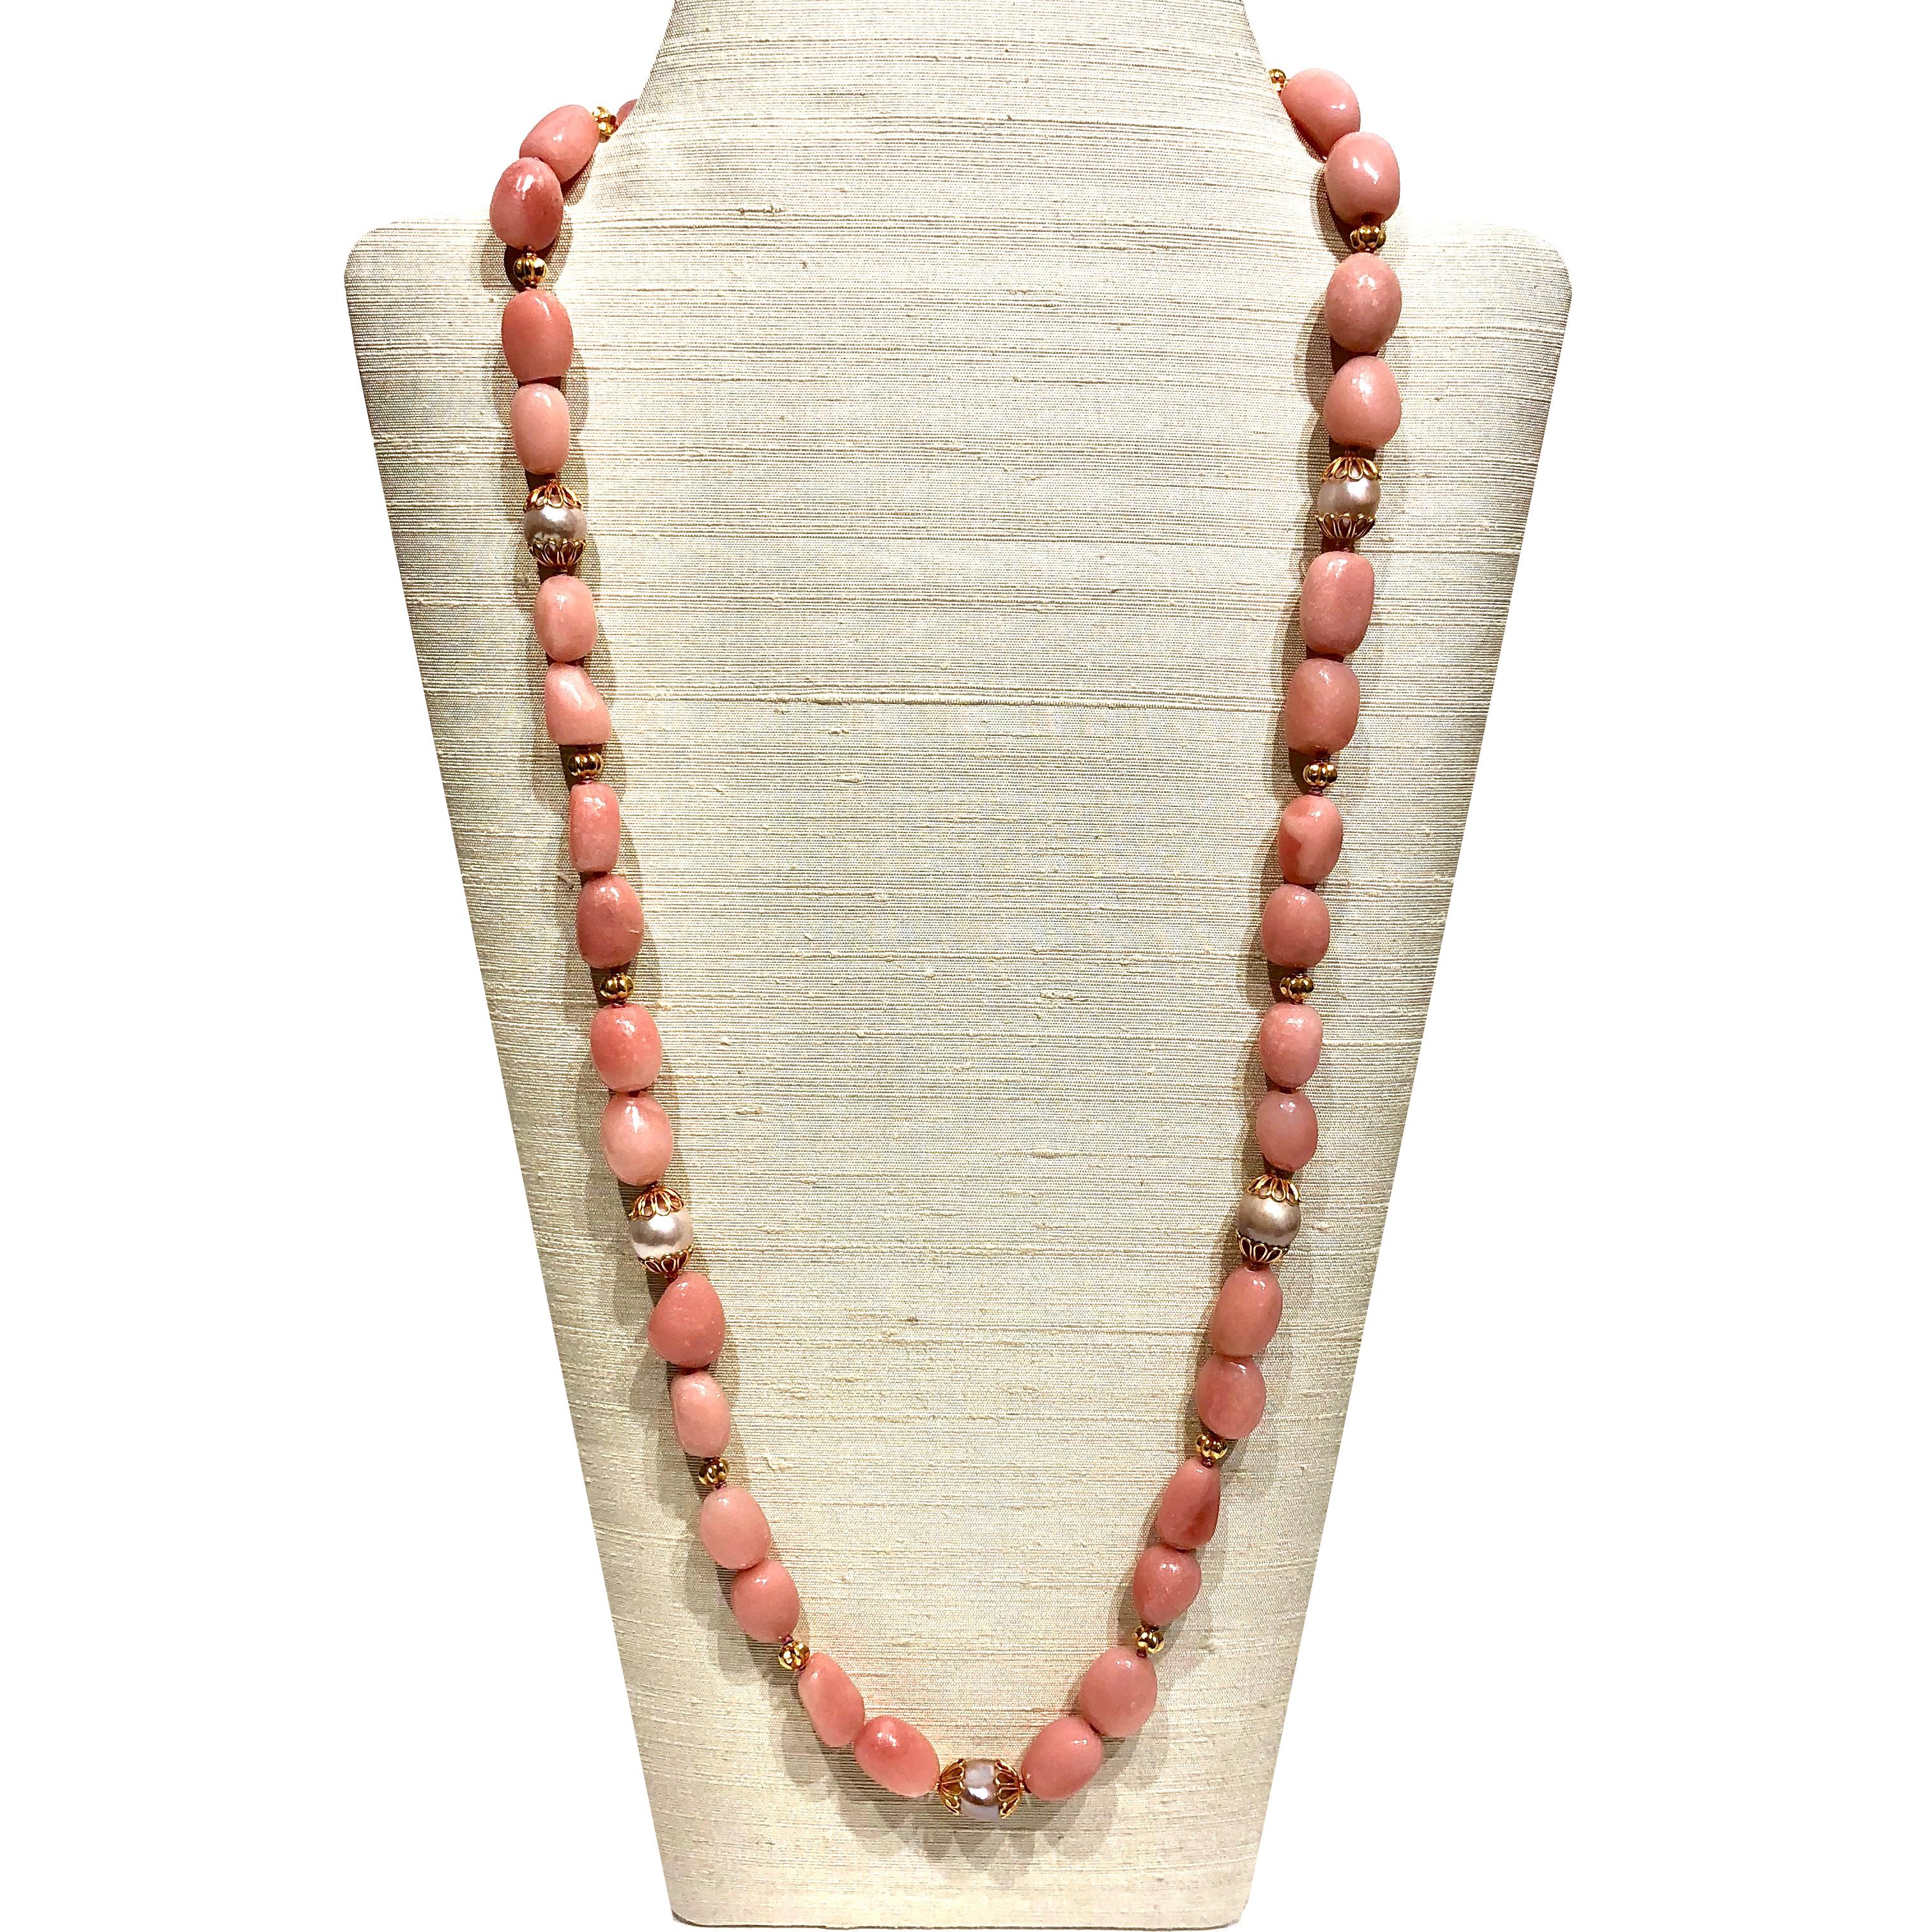 33.collier de 85 cm de long avec des perles d'aragonite rose, des perles d'eau douce et des perles et fermoir en or 18k.

Un collier élégant avec une belle aragonite rose et des perles d'eau douce de couleur rose est un accessoire d'été parfait.
